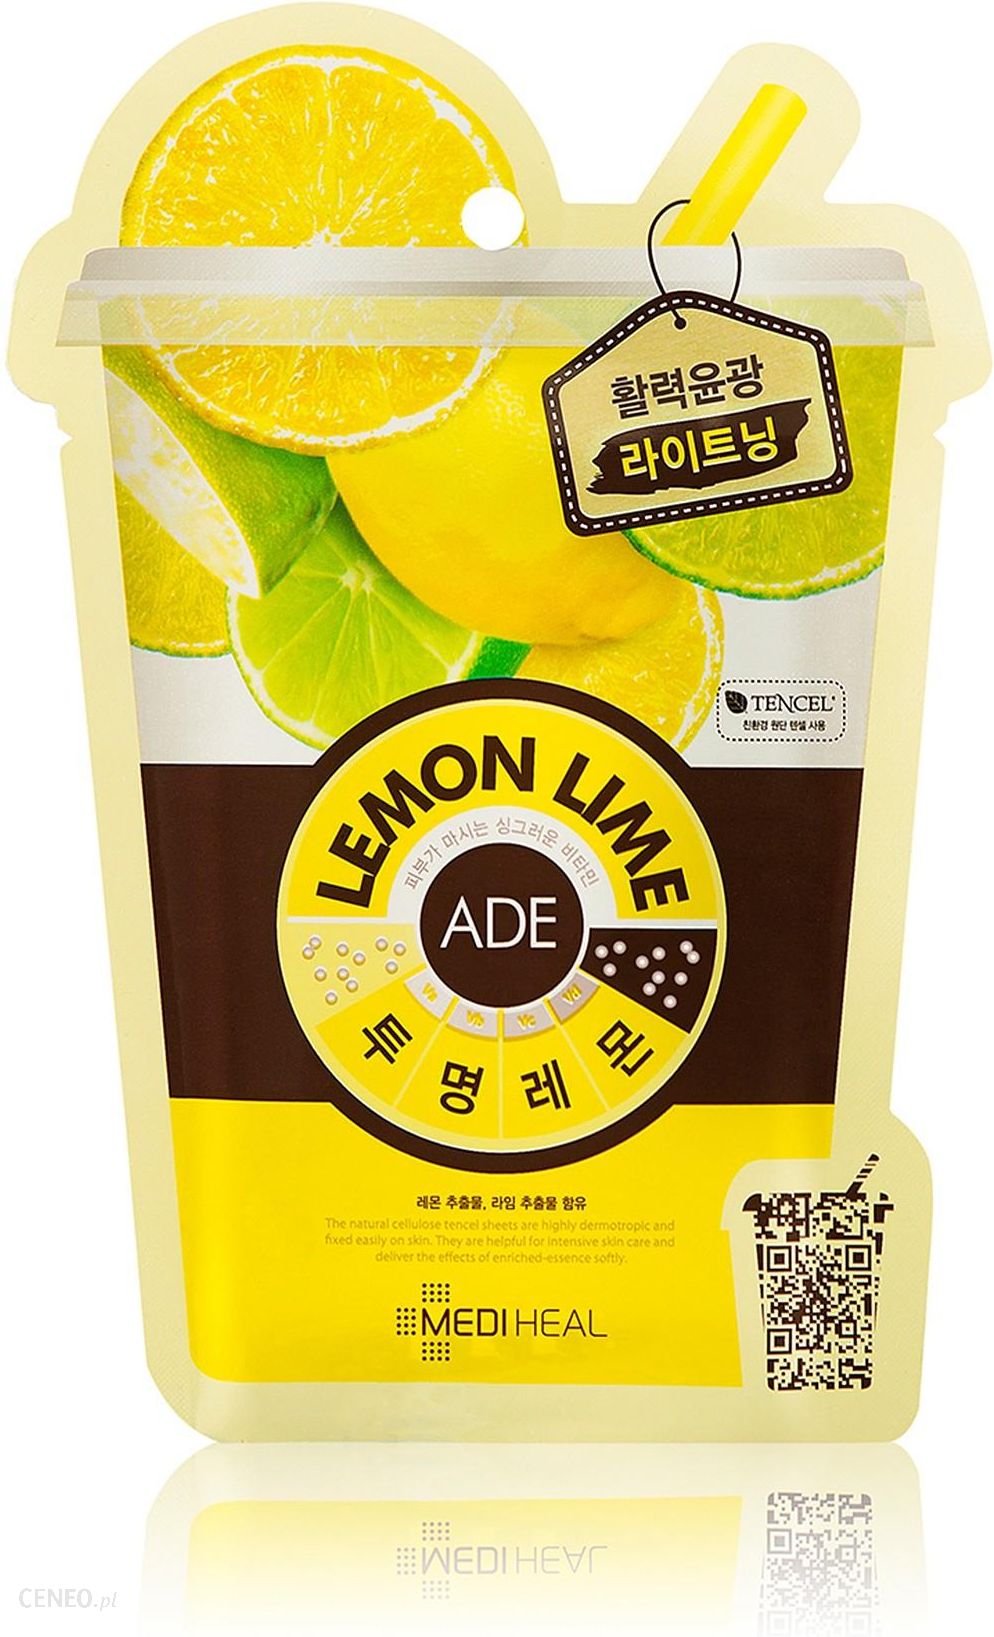 Mediheal Lemon Lime Ade Mask 25ml